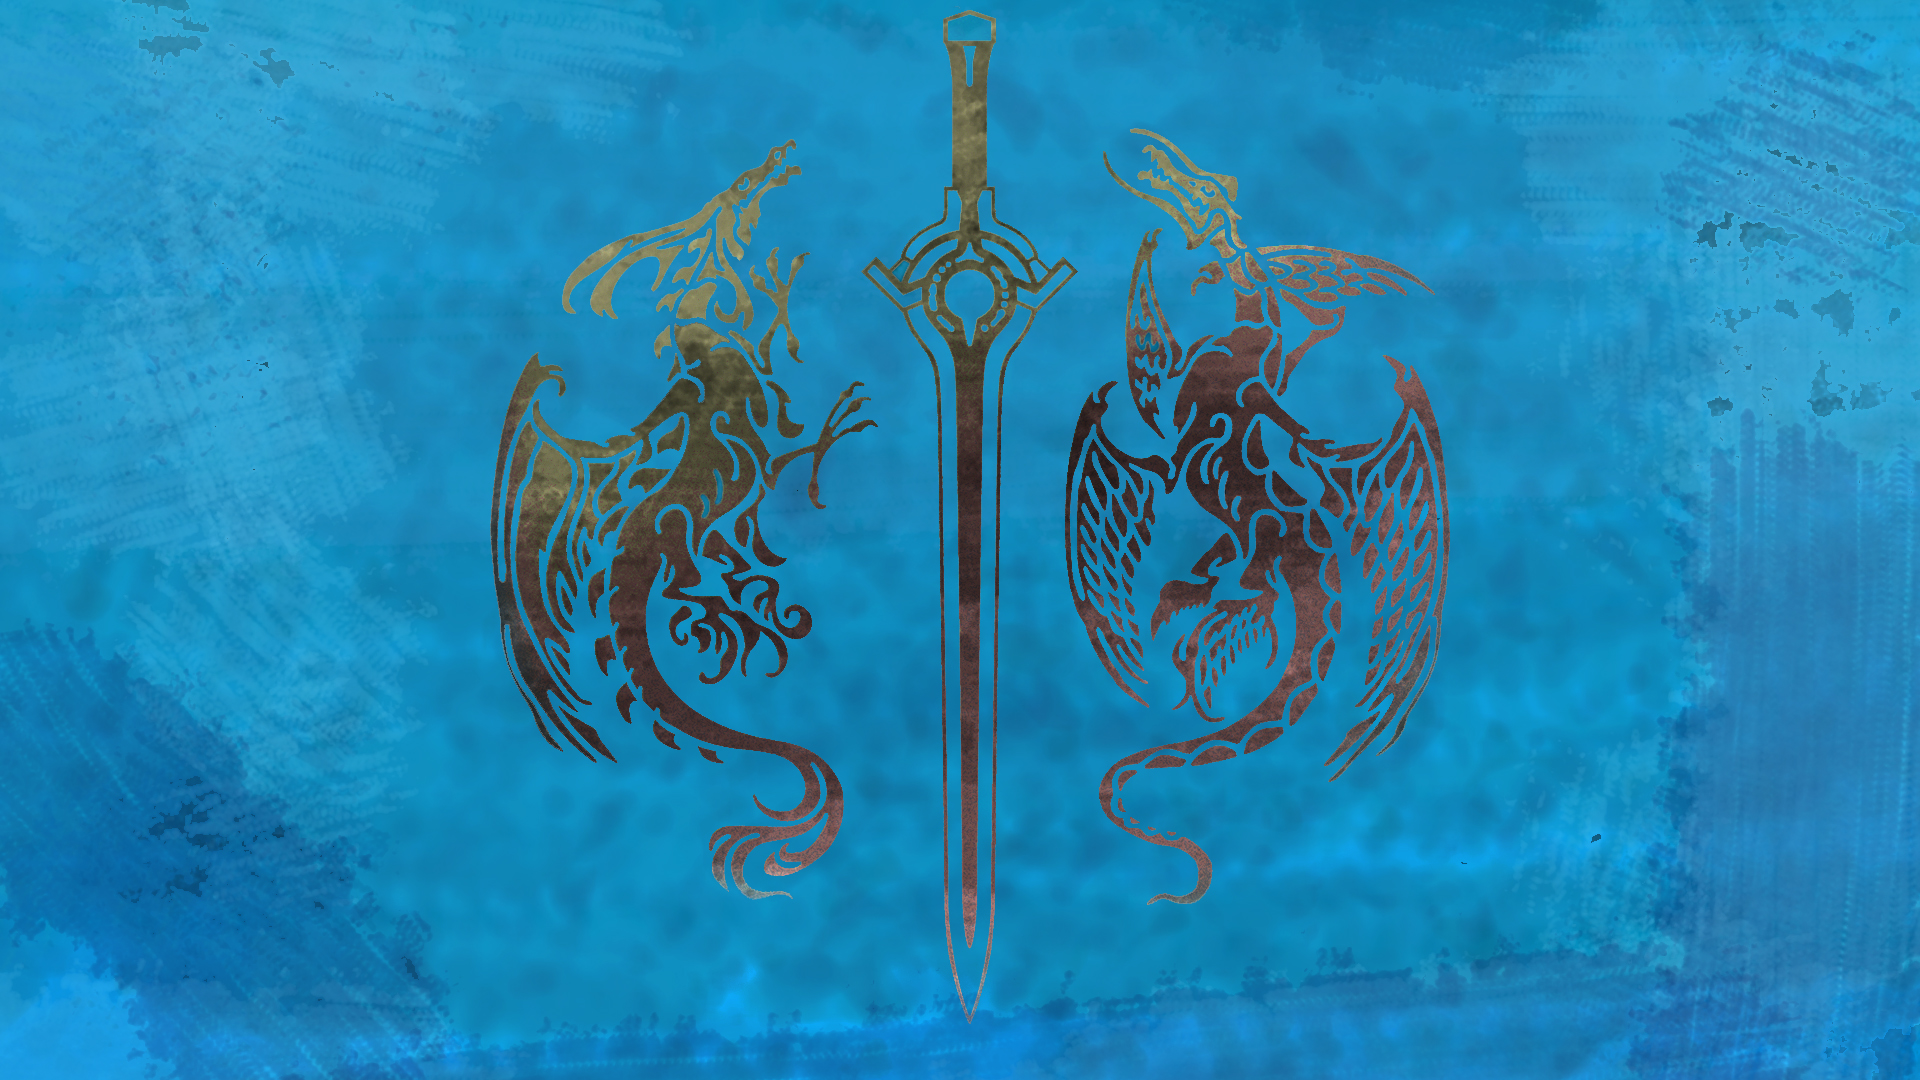 I Made This For Fire Emblem Awakening - Fire Emblem Wallpaper Logo , HD Wallpaper & Backgrounds